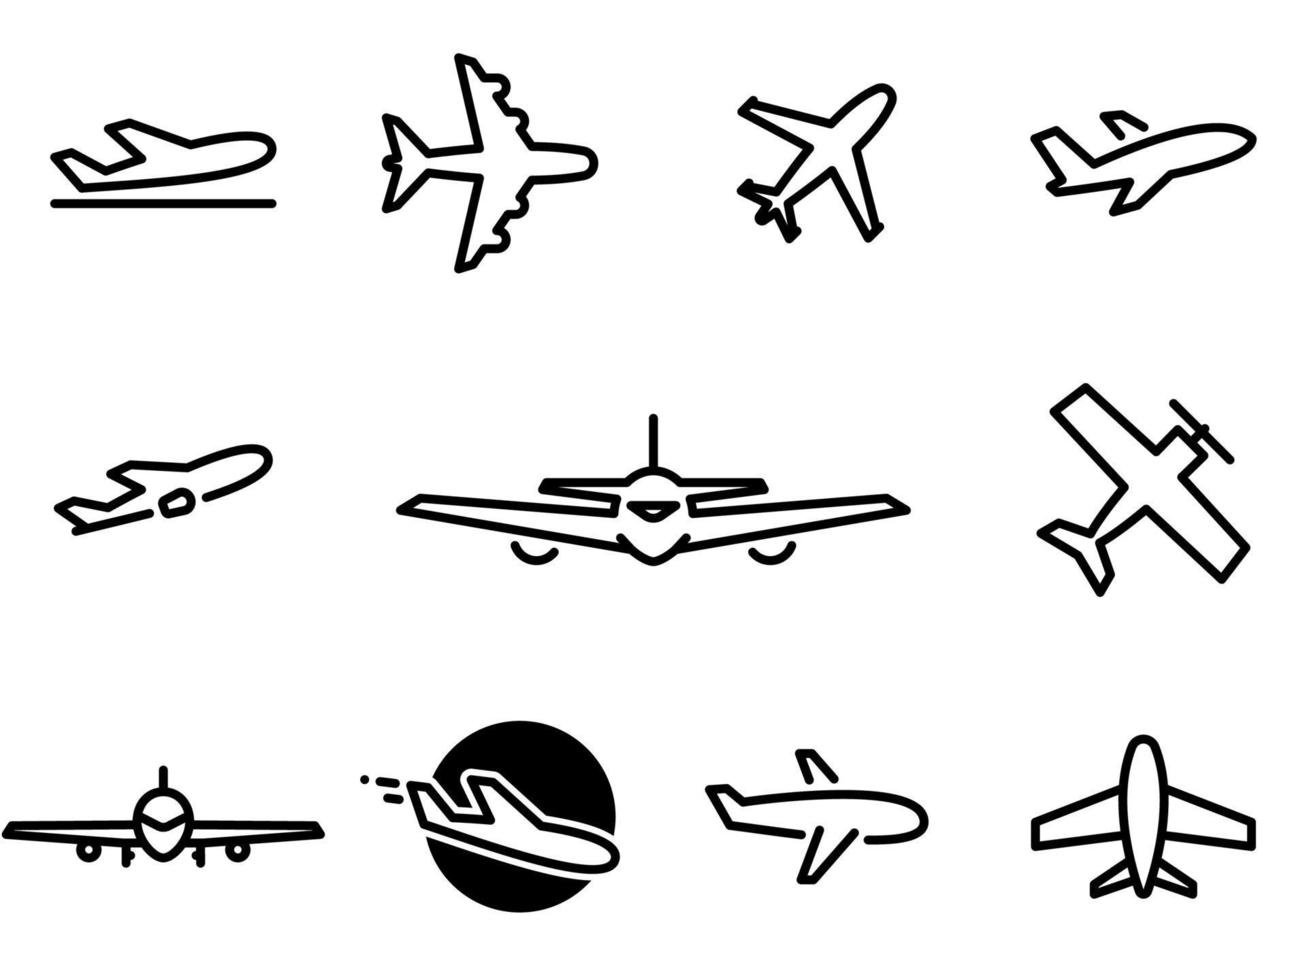 icônes vectorielles simples. illustration plate sur un thème transport aérien, avion vecteur